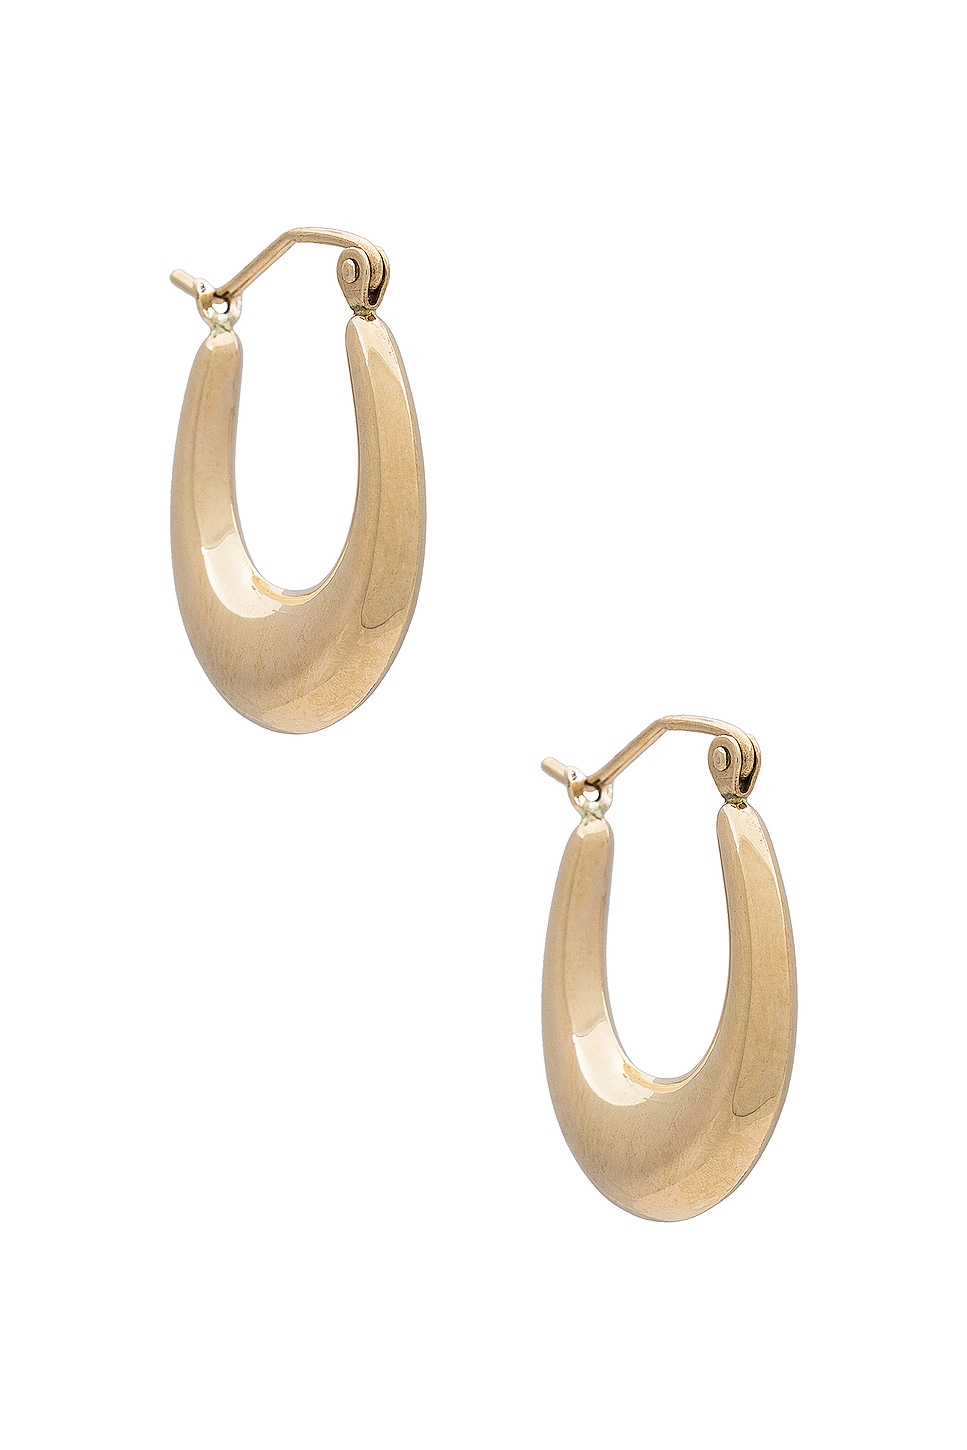 Image 1 of Loren Stewart Dome Hammock Hoop Earrings in 14k Yellow Gold